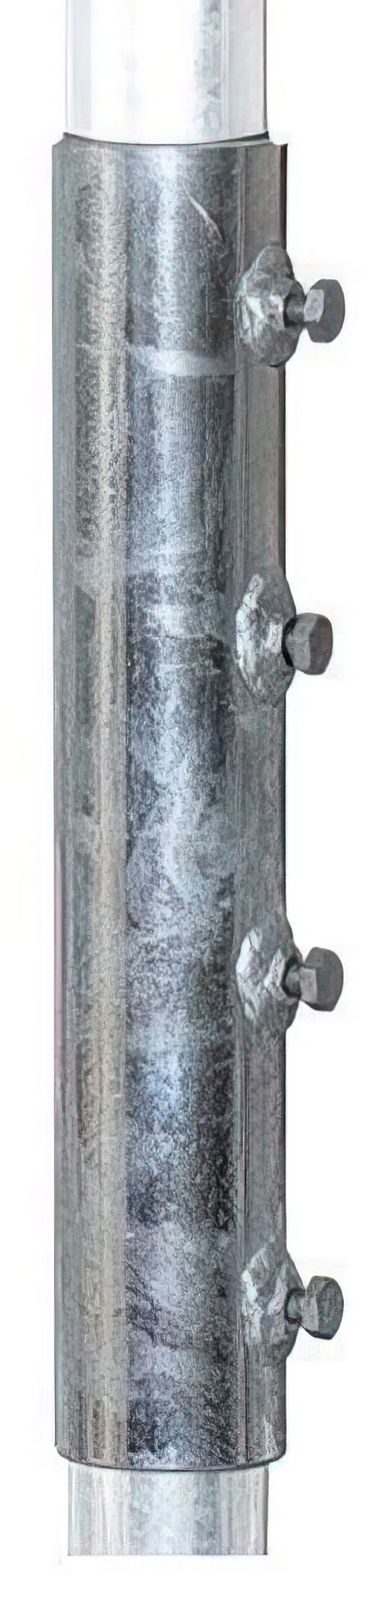 48mm Masthülse / Verbinder XmediaSat MVH48 für 48er Rohr feuerverzinkt rostfrei